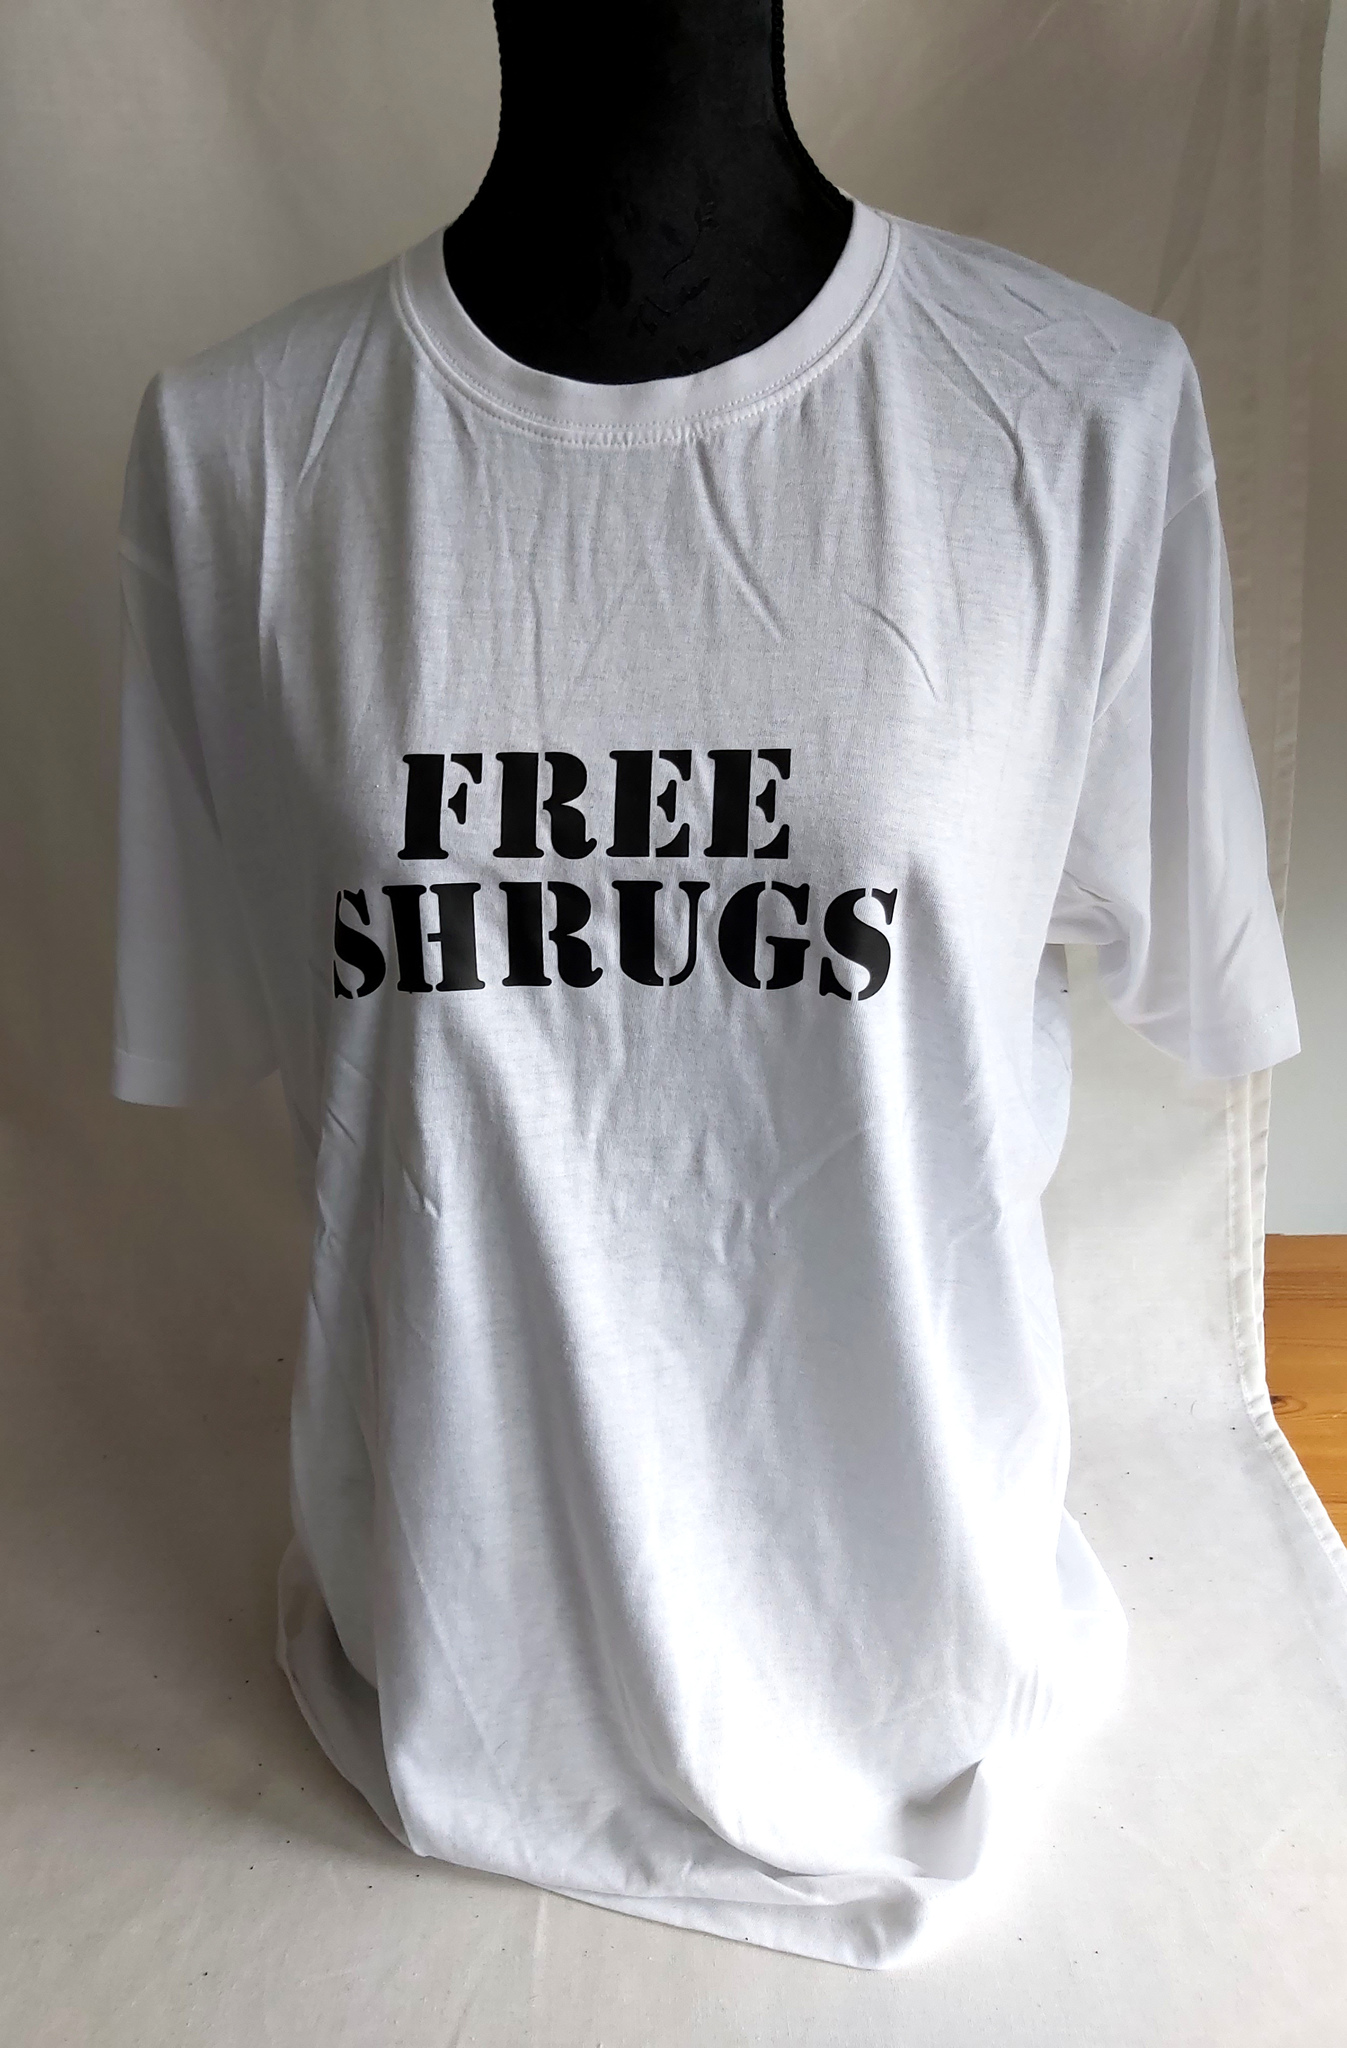 Free Shrugs t-shirt